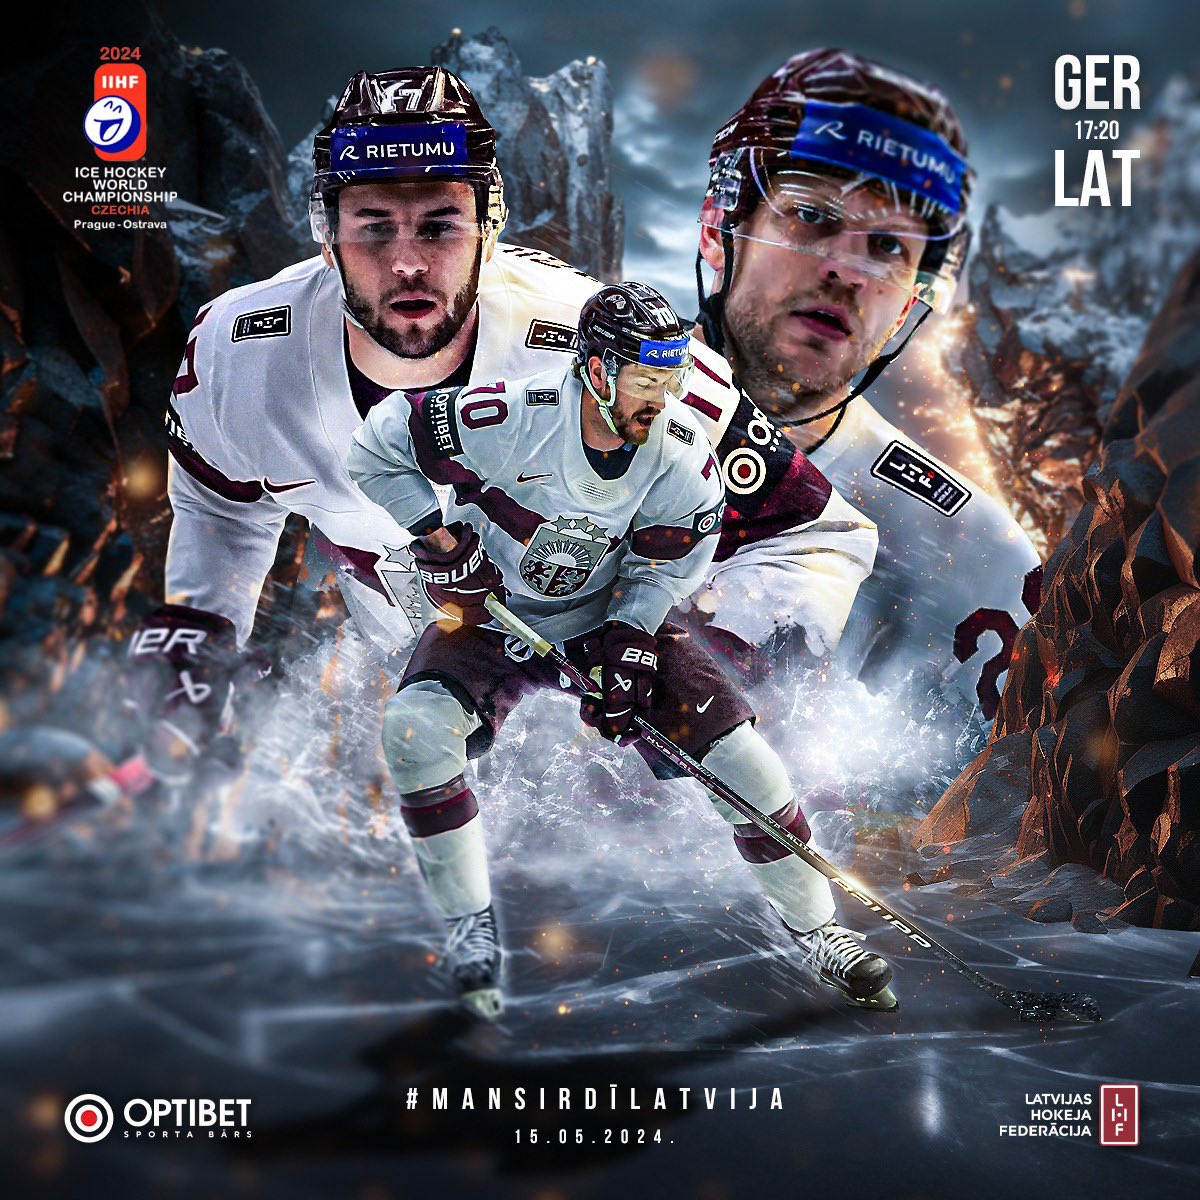 Šodien Latvijas 🇱🇻 nacionālajai izlasei Pasaules čempionāta ceturtā spēle. Mūsu hokejisti tiekas ar Vācijas 🇩🇪 izlasi! Par Latviju, par uzvaru!